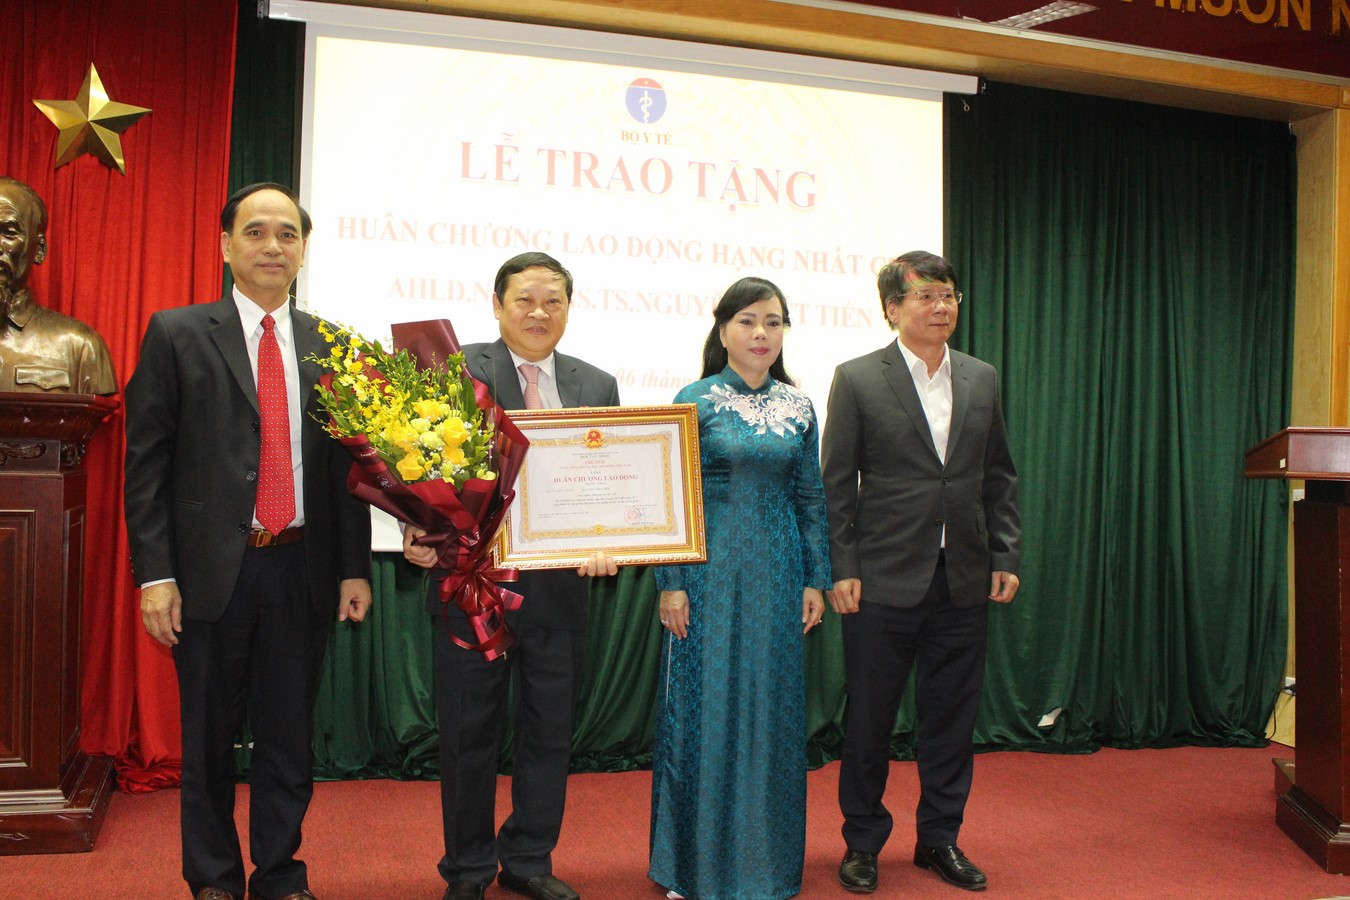 Lễ trao tặng Huân chương Lao động Hạng nhất cho AHLĐ.NGND.GS.TS Nguyễn Viết Tiến và công bố các quyết định về công tác cán bộ